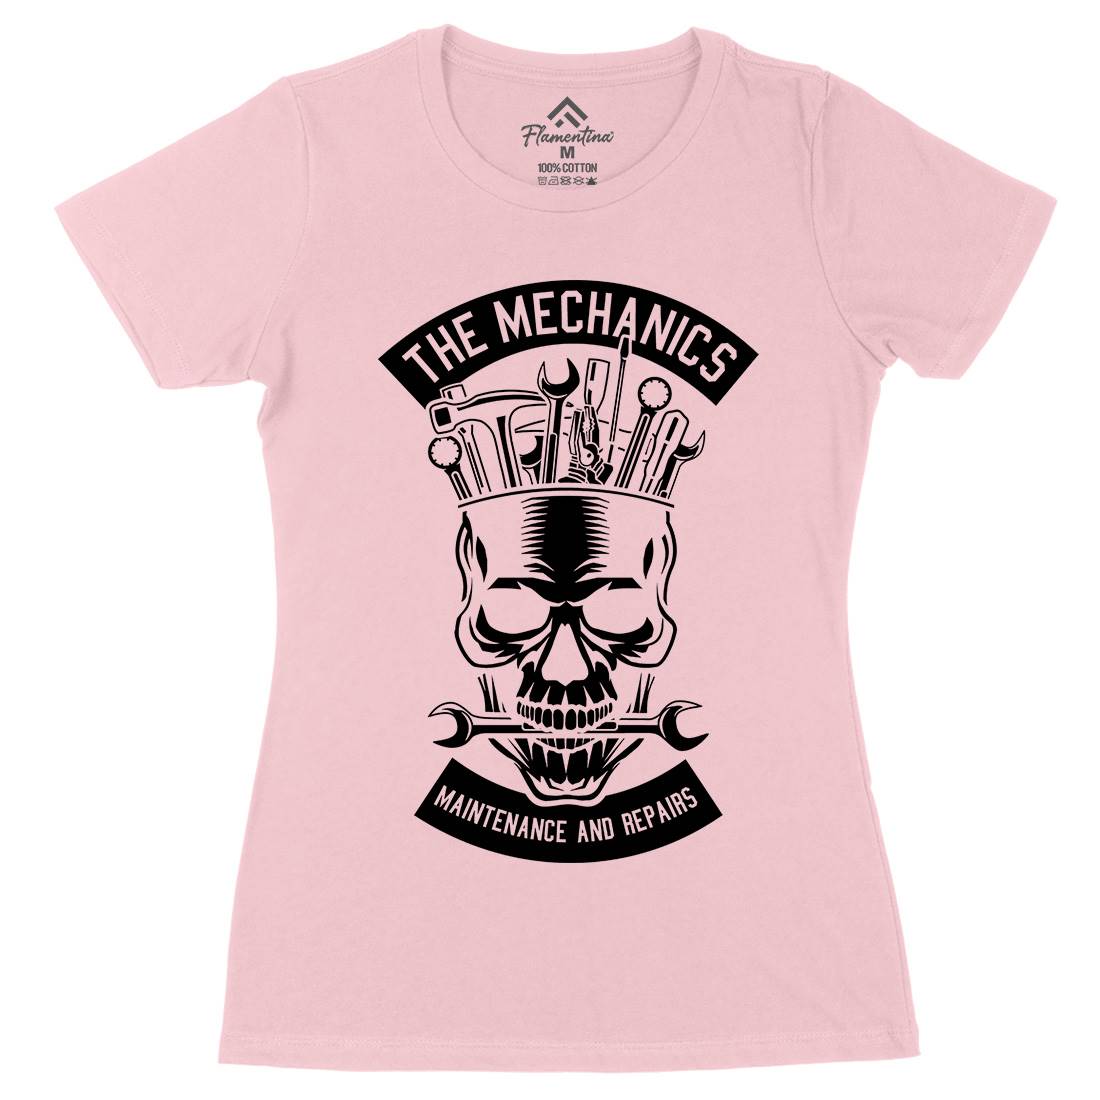 The Mechanics Womens Organic Crew Neck T-Shirt Retro B653